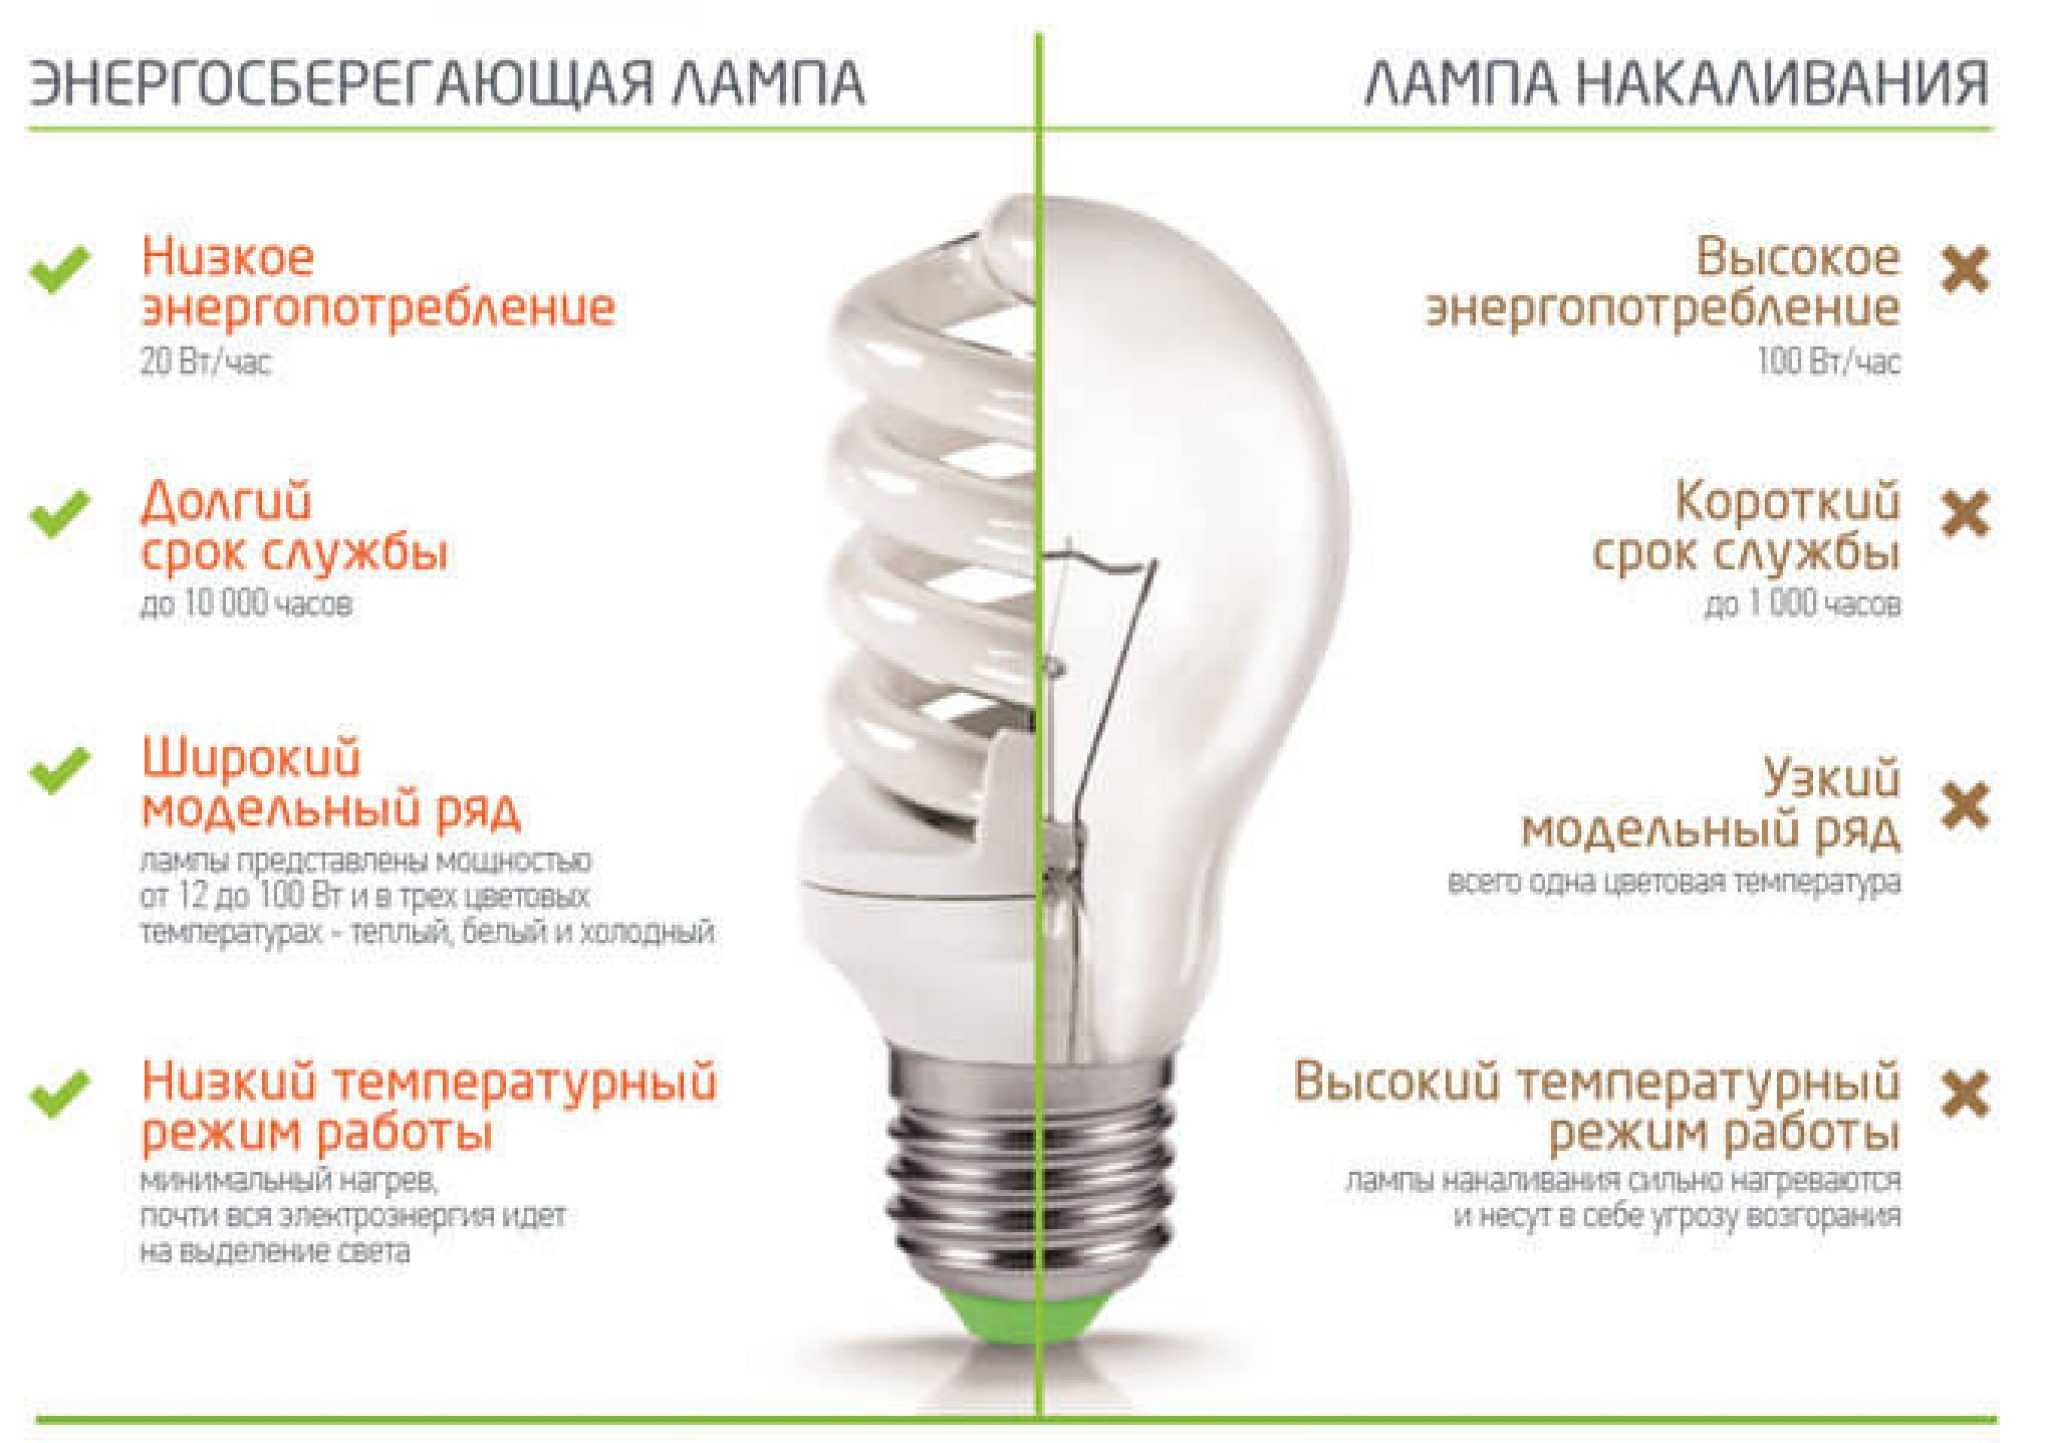 Виды энергосберегающих ламп и их цоколей - светодиодные и другие, цена